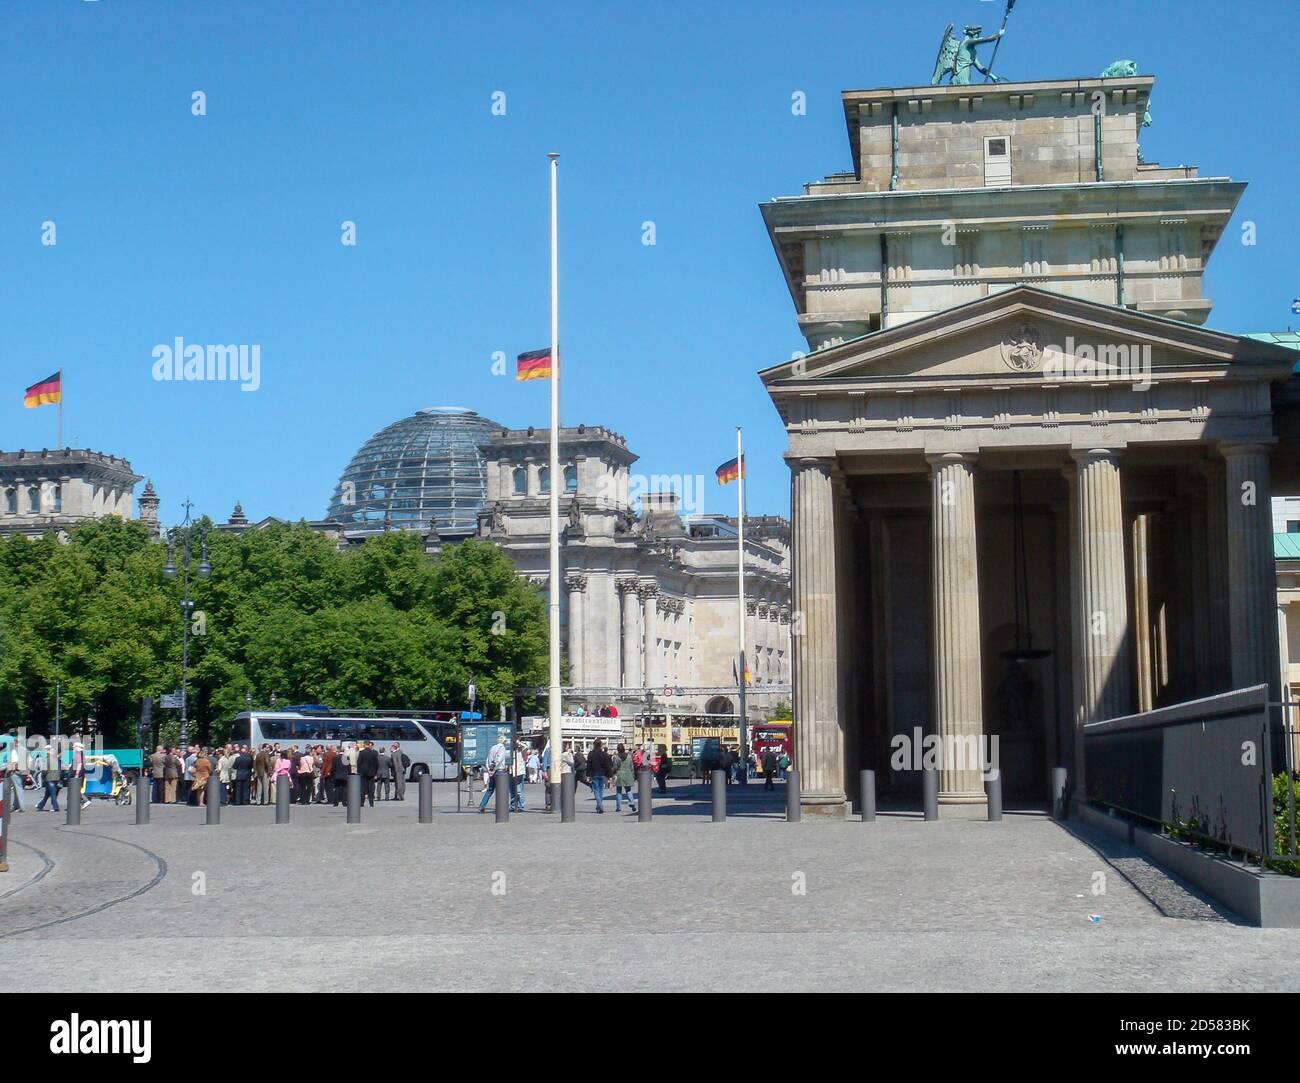 Bâtiments historiques de Berlin: Vue latérale de la porte de Brandebourg, avec Bundestag le Parlement fédéral allemand en arrière-plan Banque D'Images